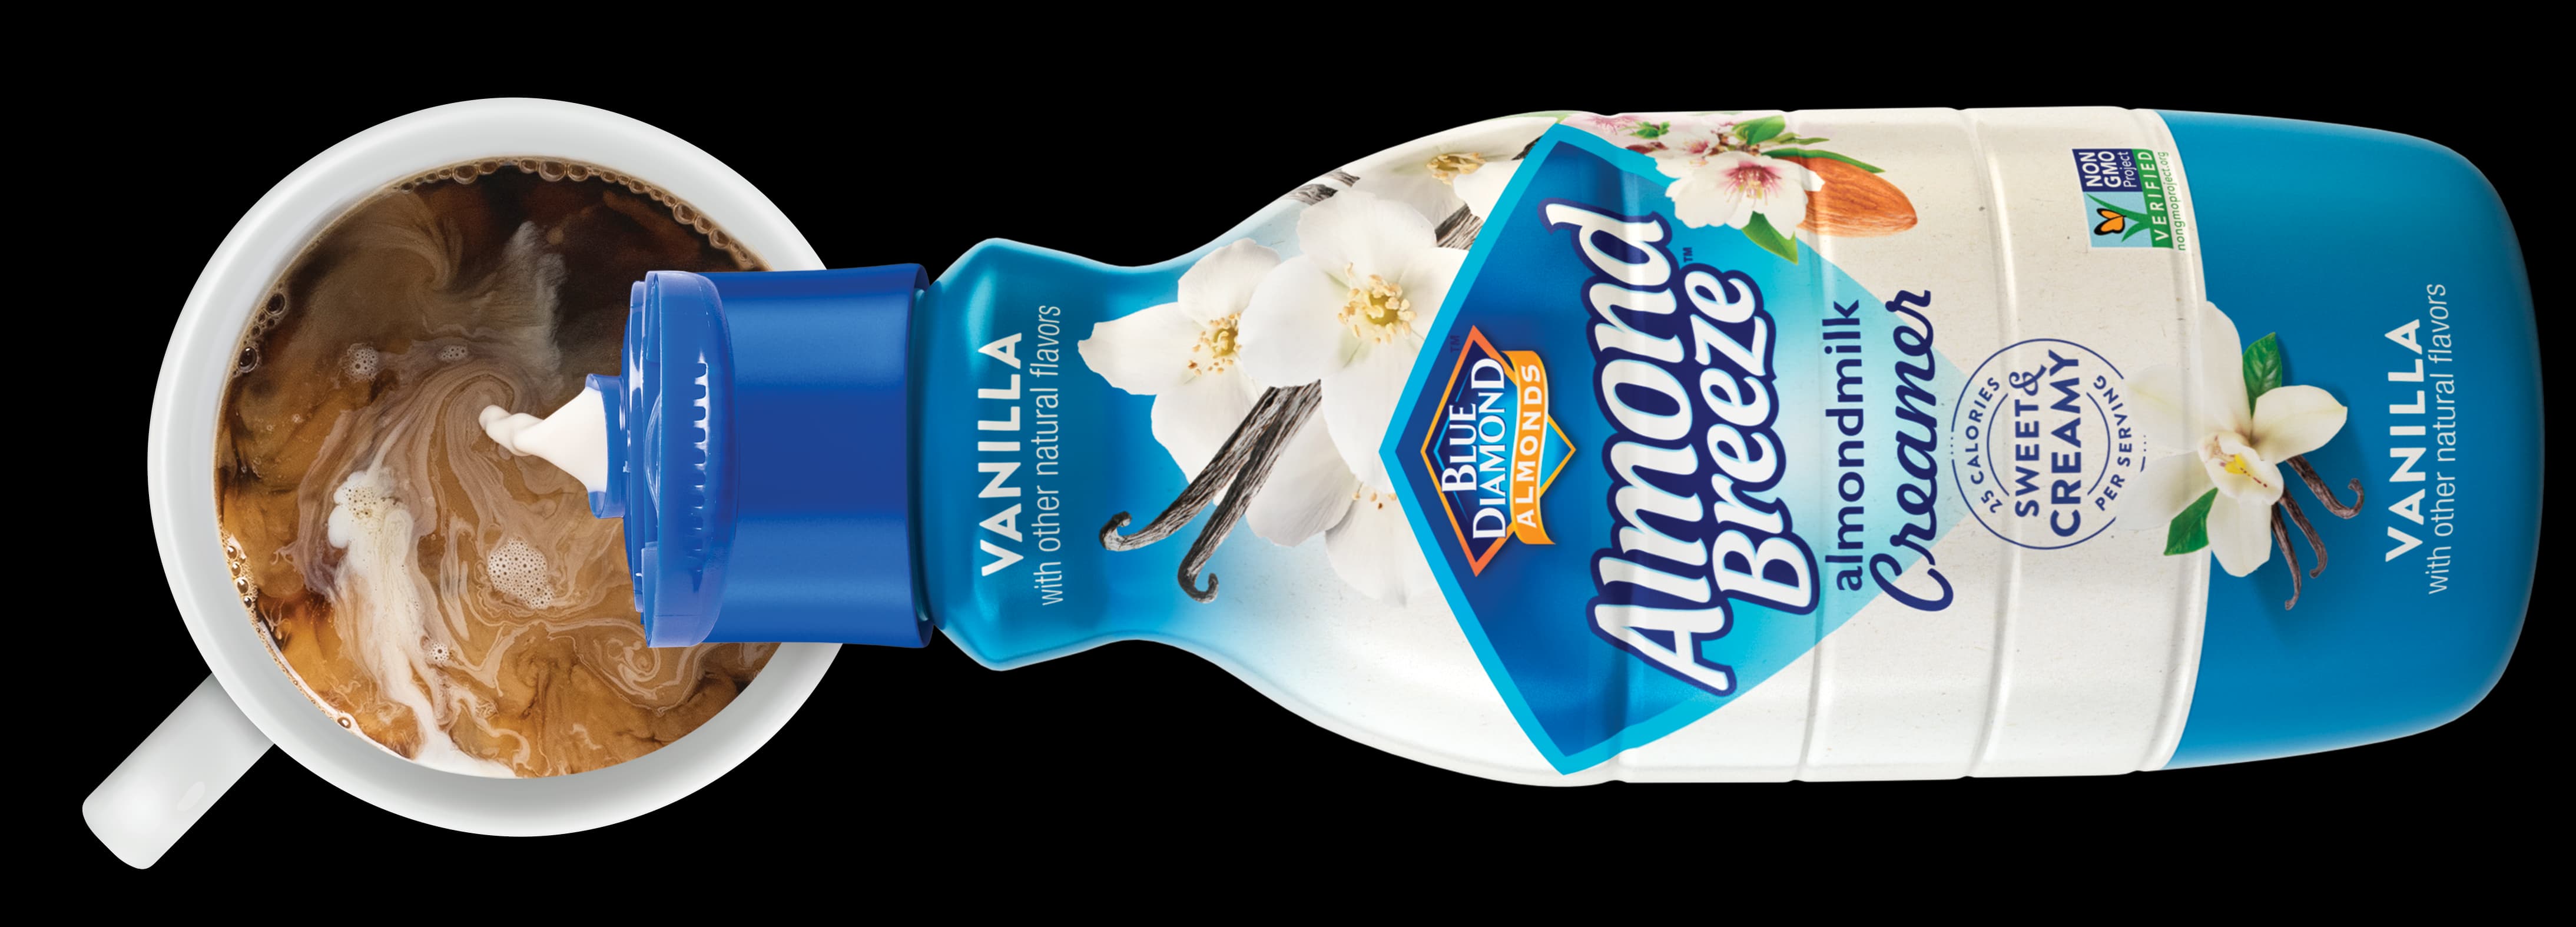 Almond Unsweetened Vanilla Creamer